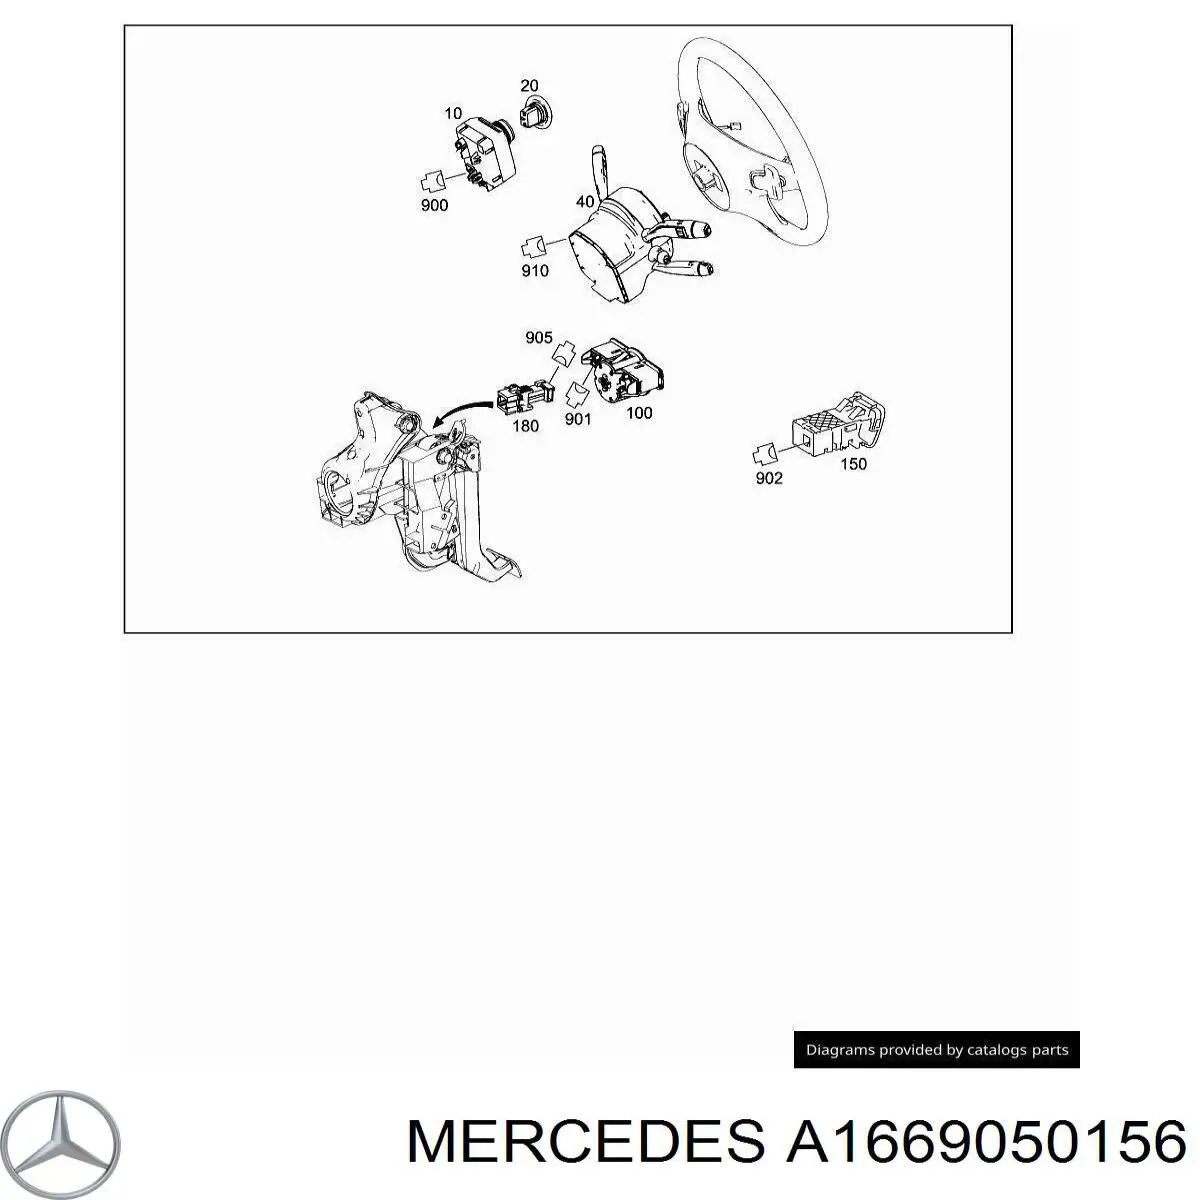 A1669050156 Mercedes conmutador de arranque